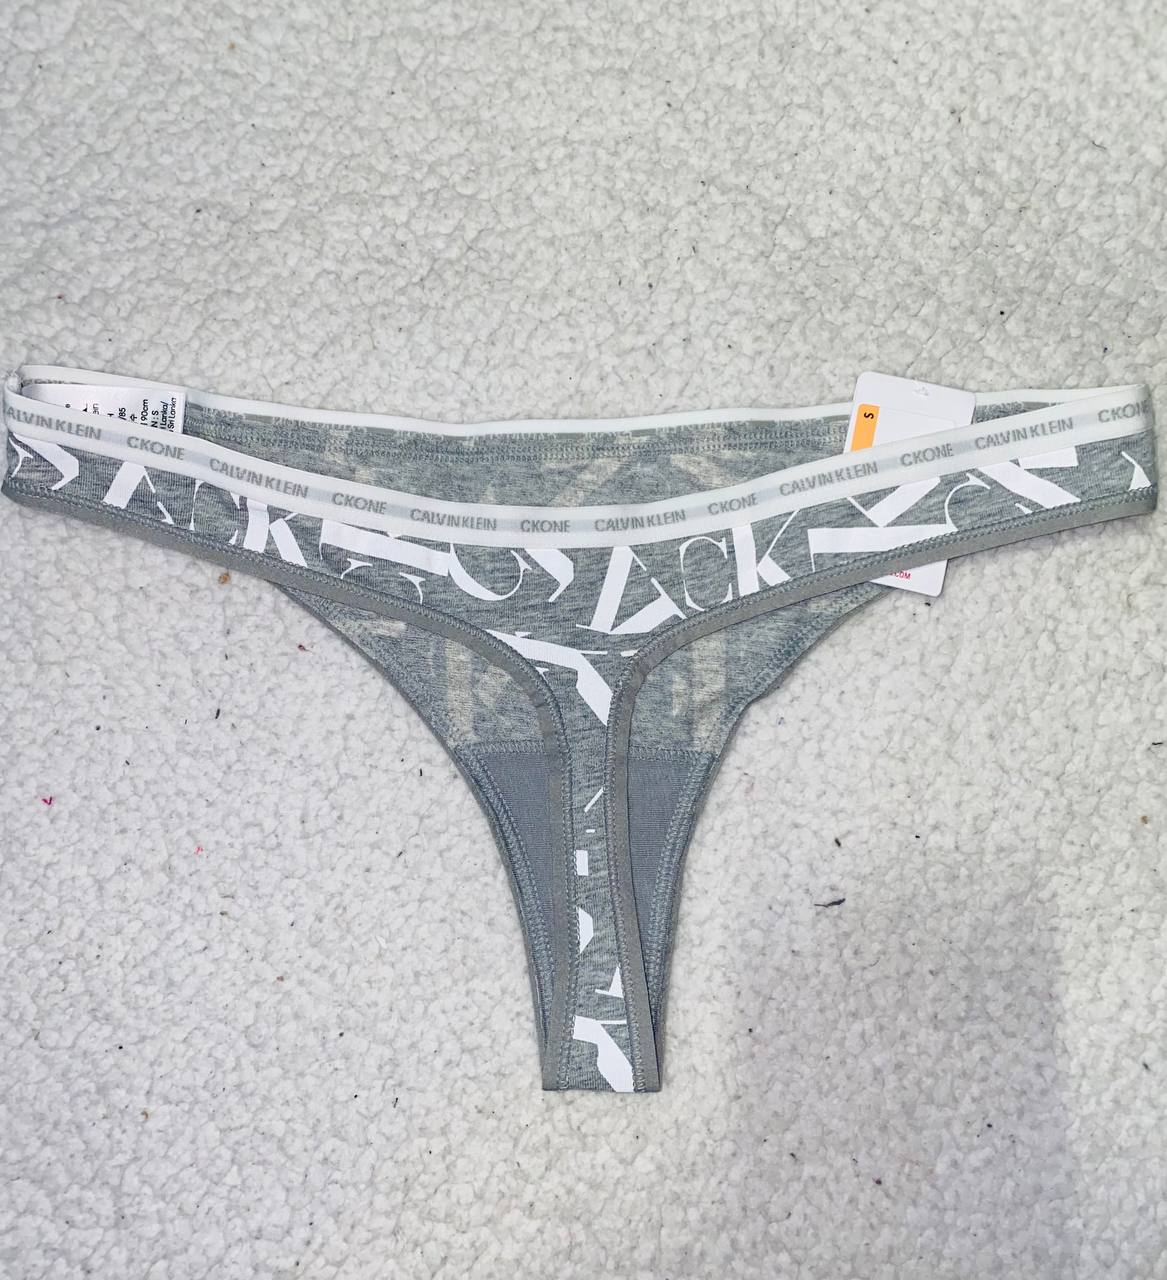 Calvin Klein underwear